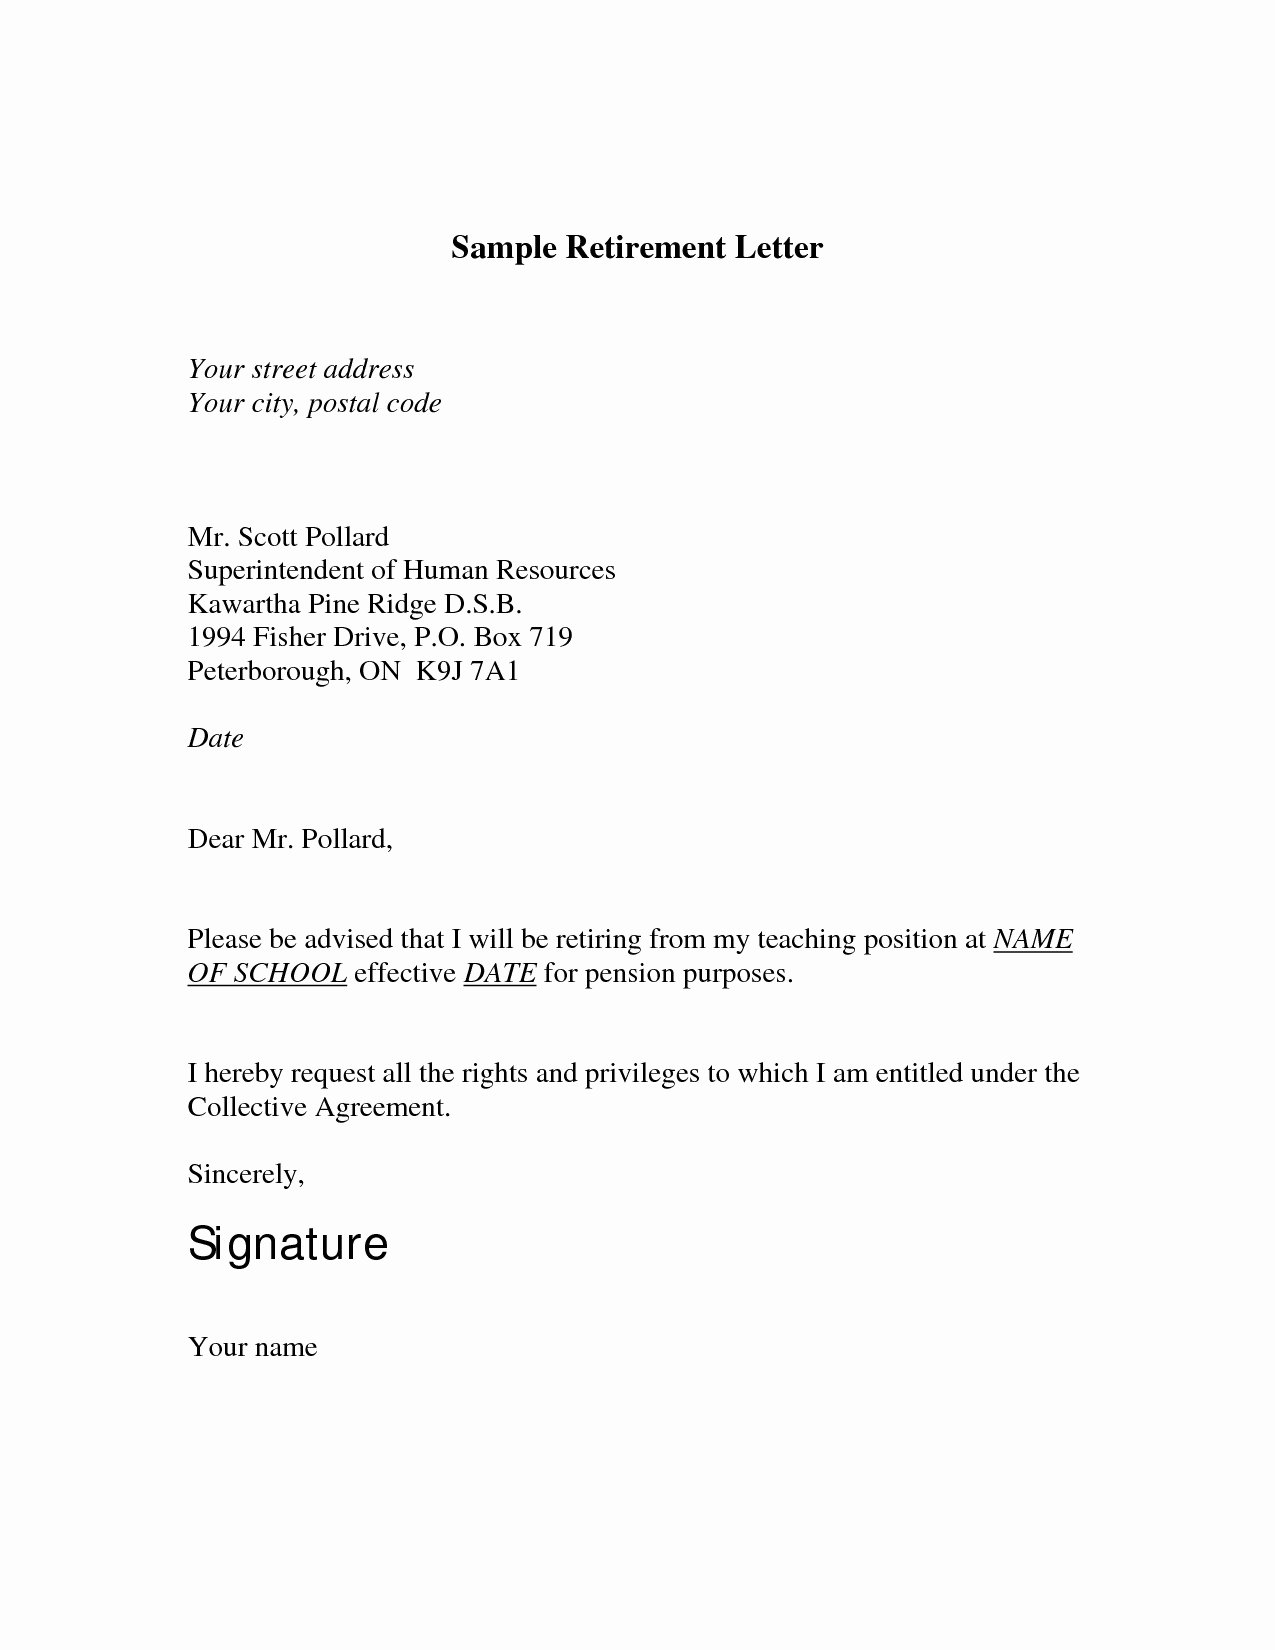 Retirement Resignation Letter Template Elegant Retirement Letter to Employer Template Samples